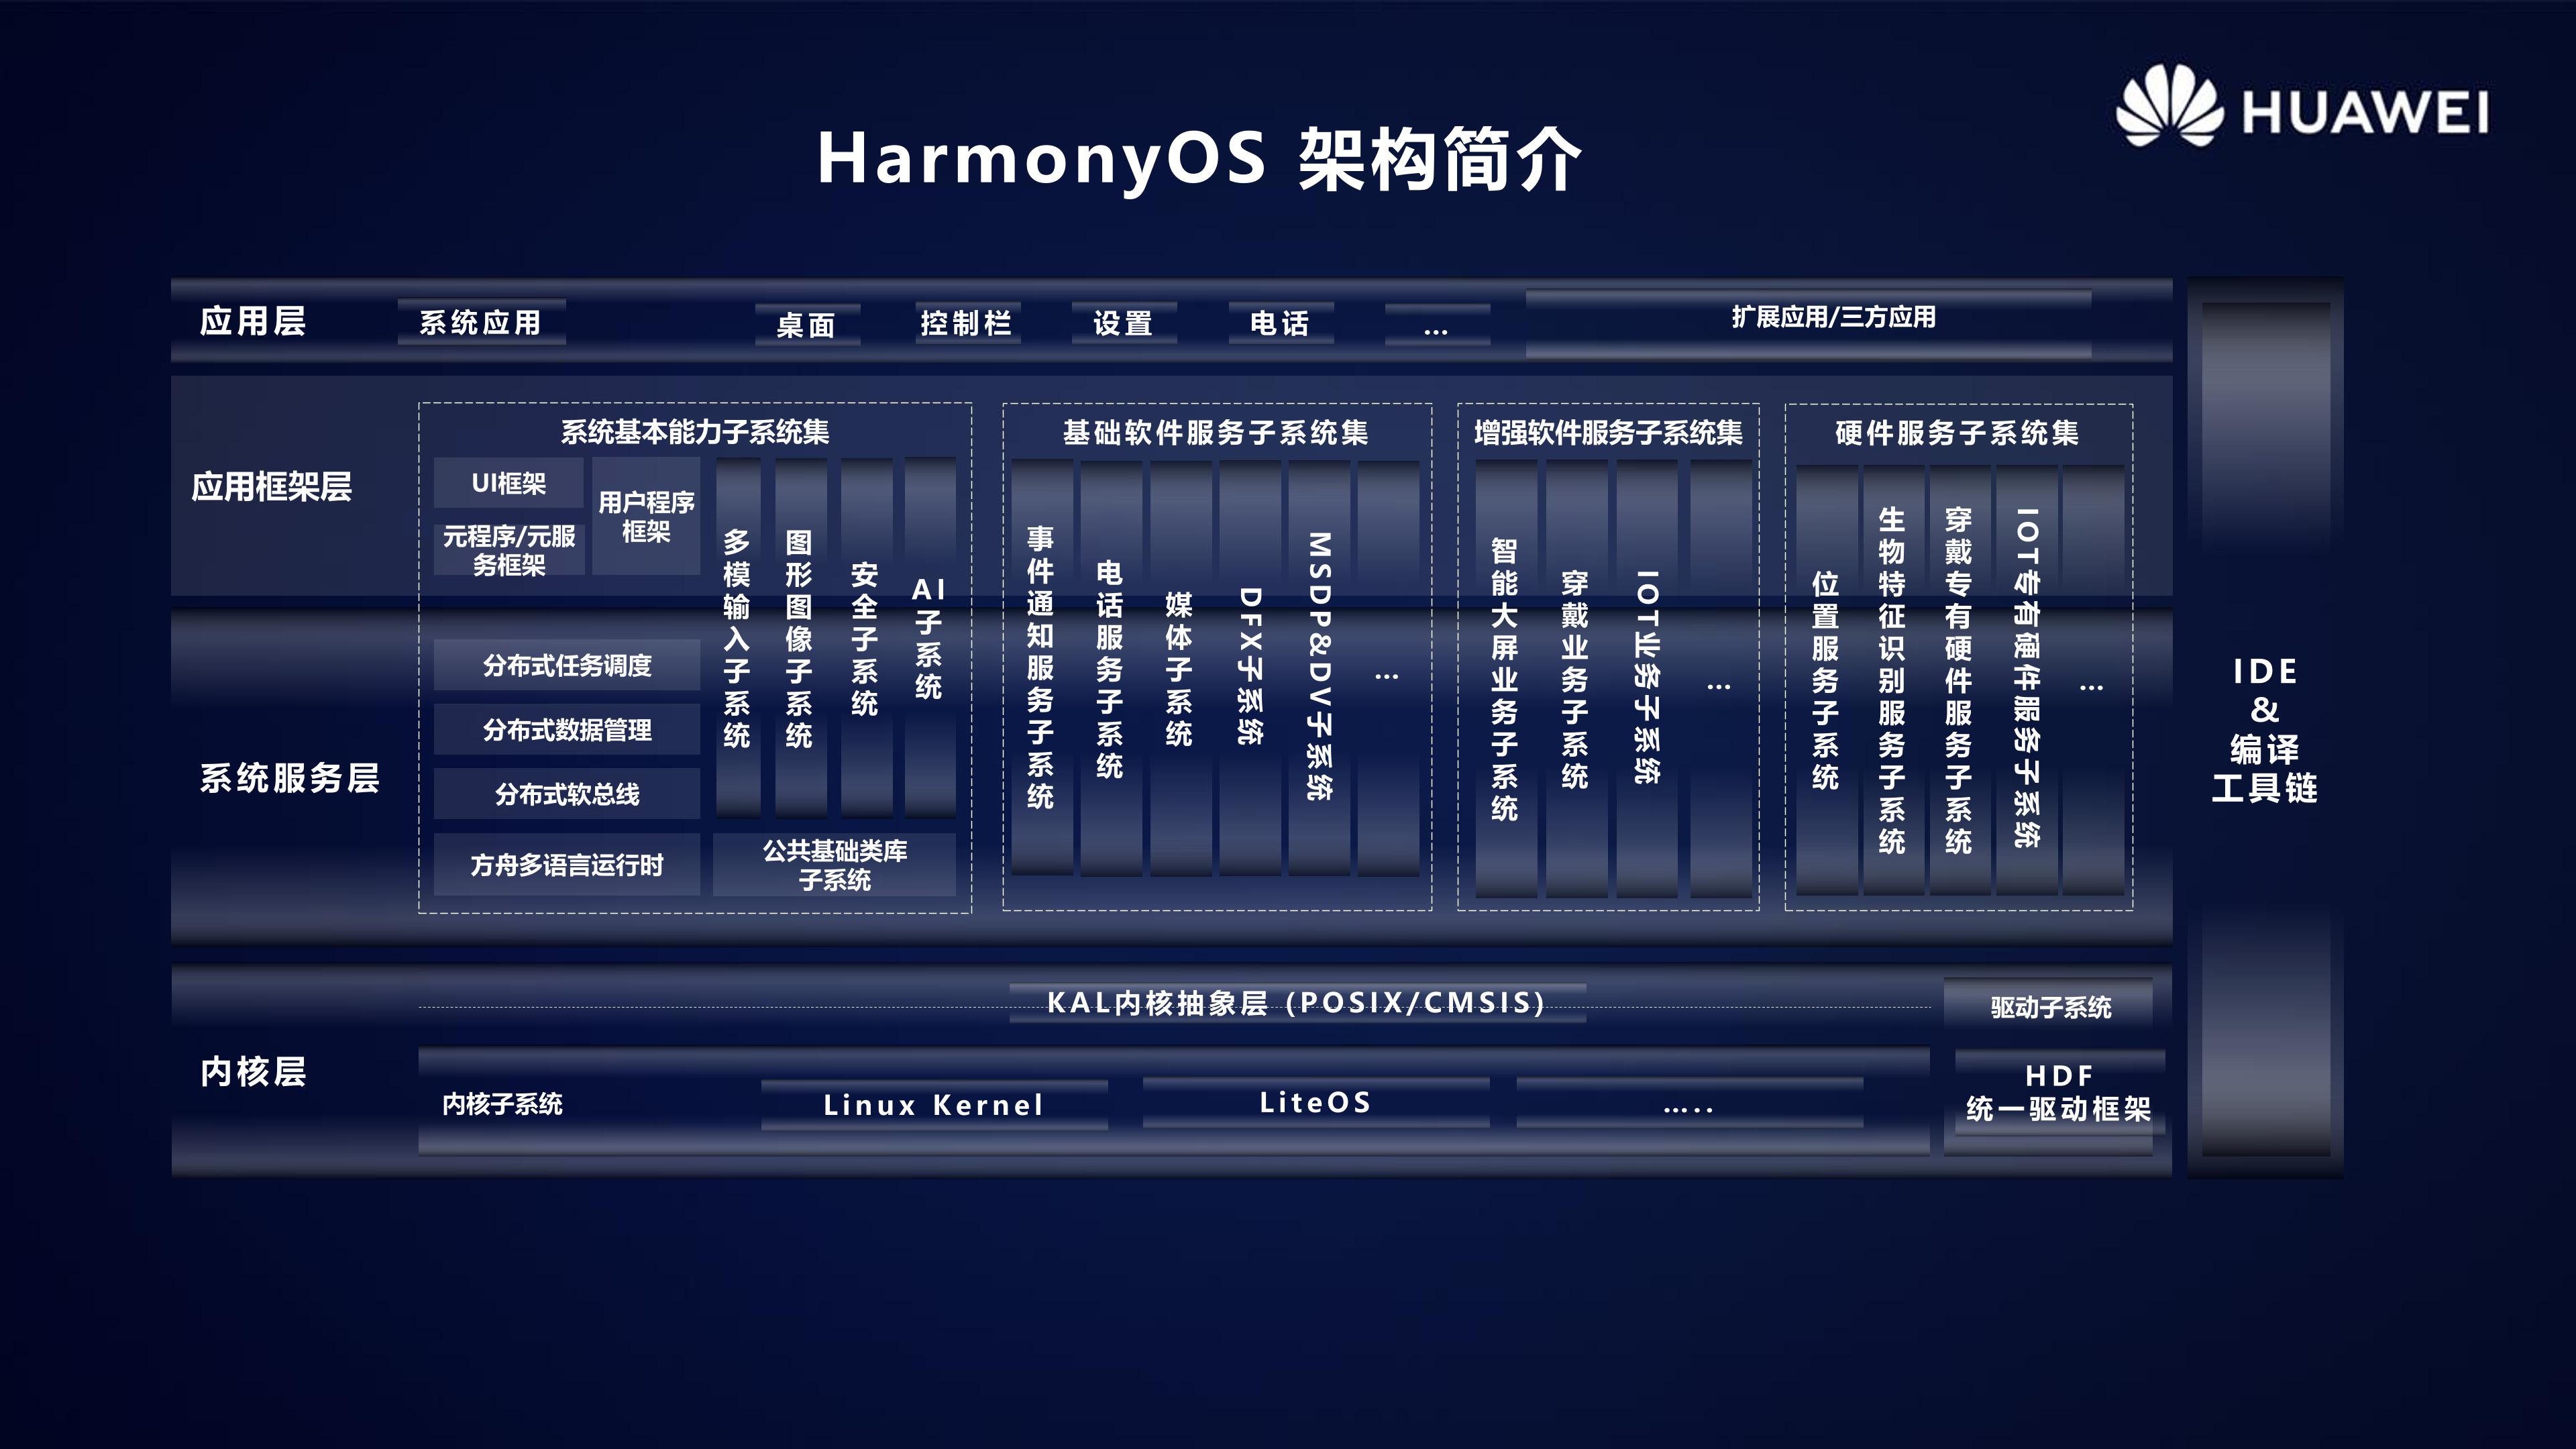 HarmonyOS 2.0手机开发者Beta活动广州站内部PPT公开-开源基础软件社区